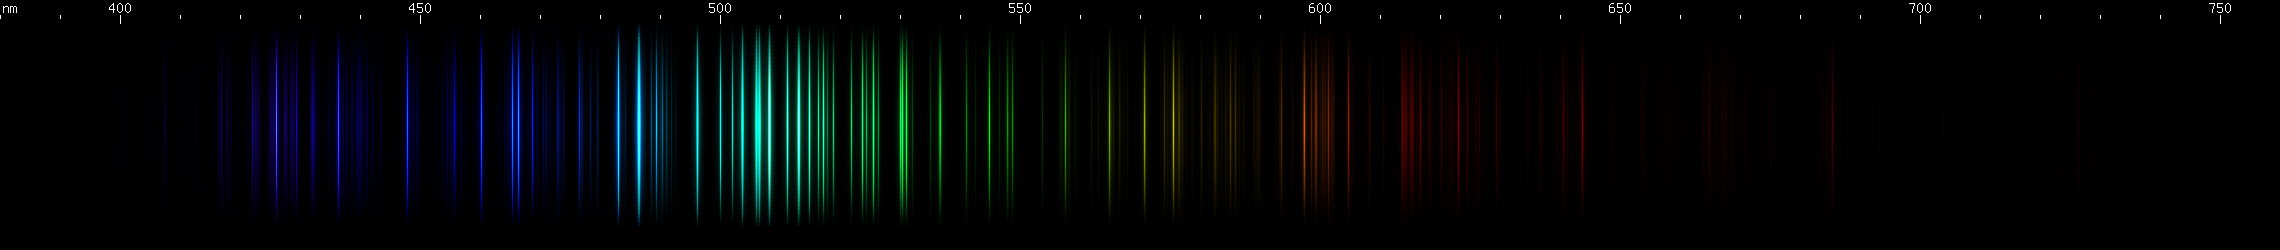 Spectral lines of Tellurium.